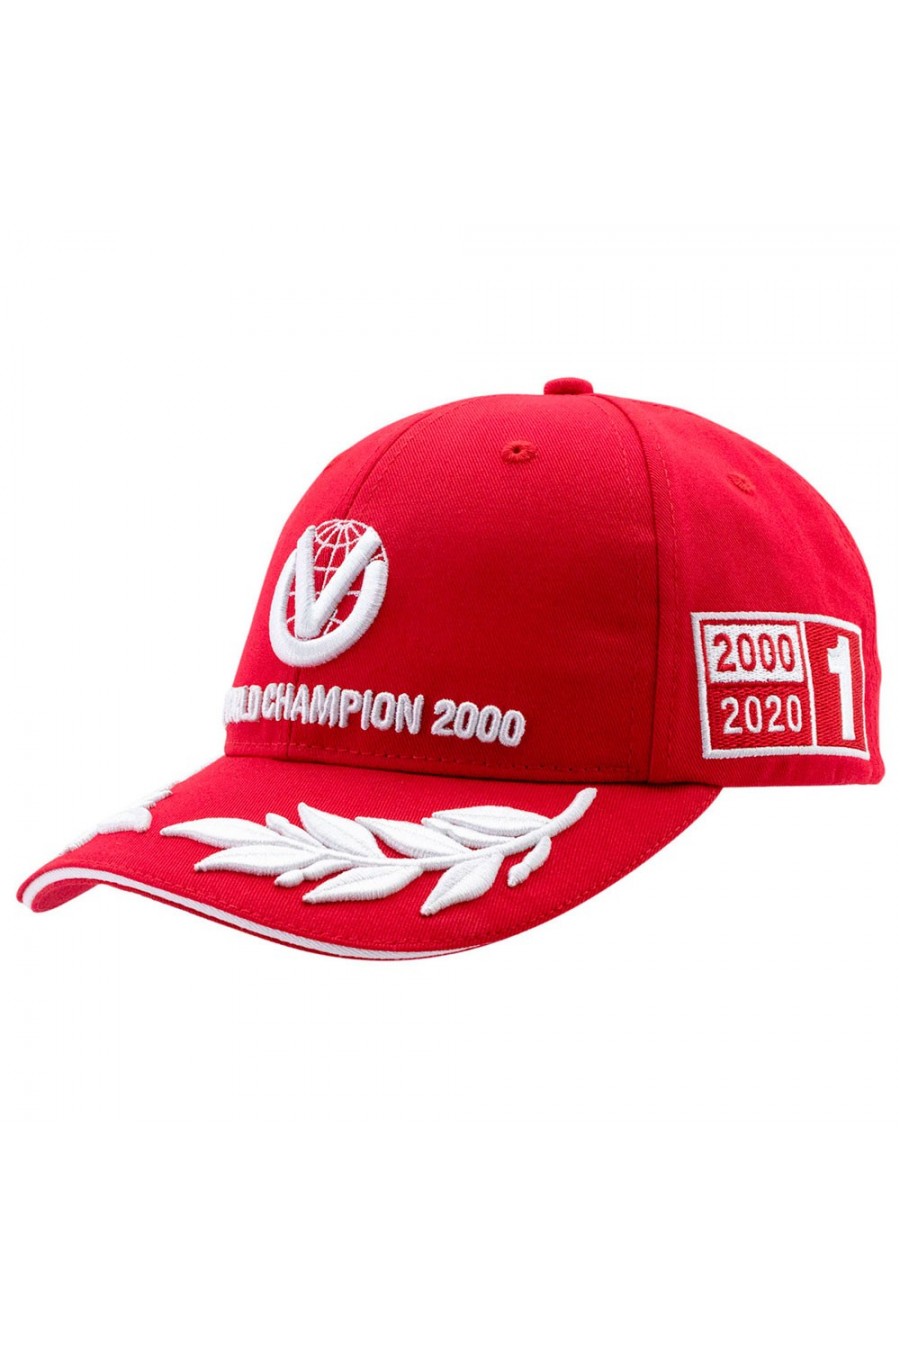 Gorra Michael Schumacher 'World Champion 2000' Edición Limitada